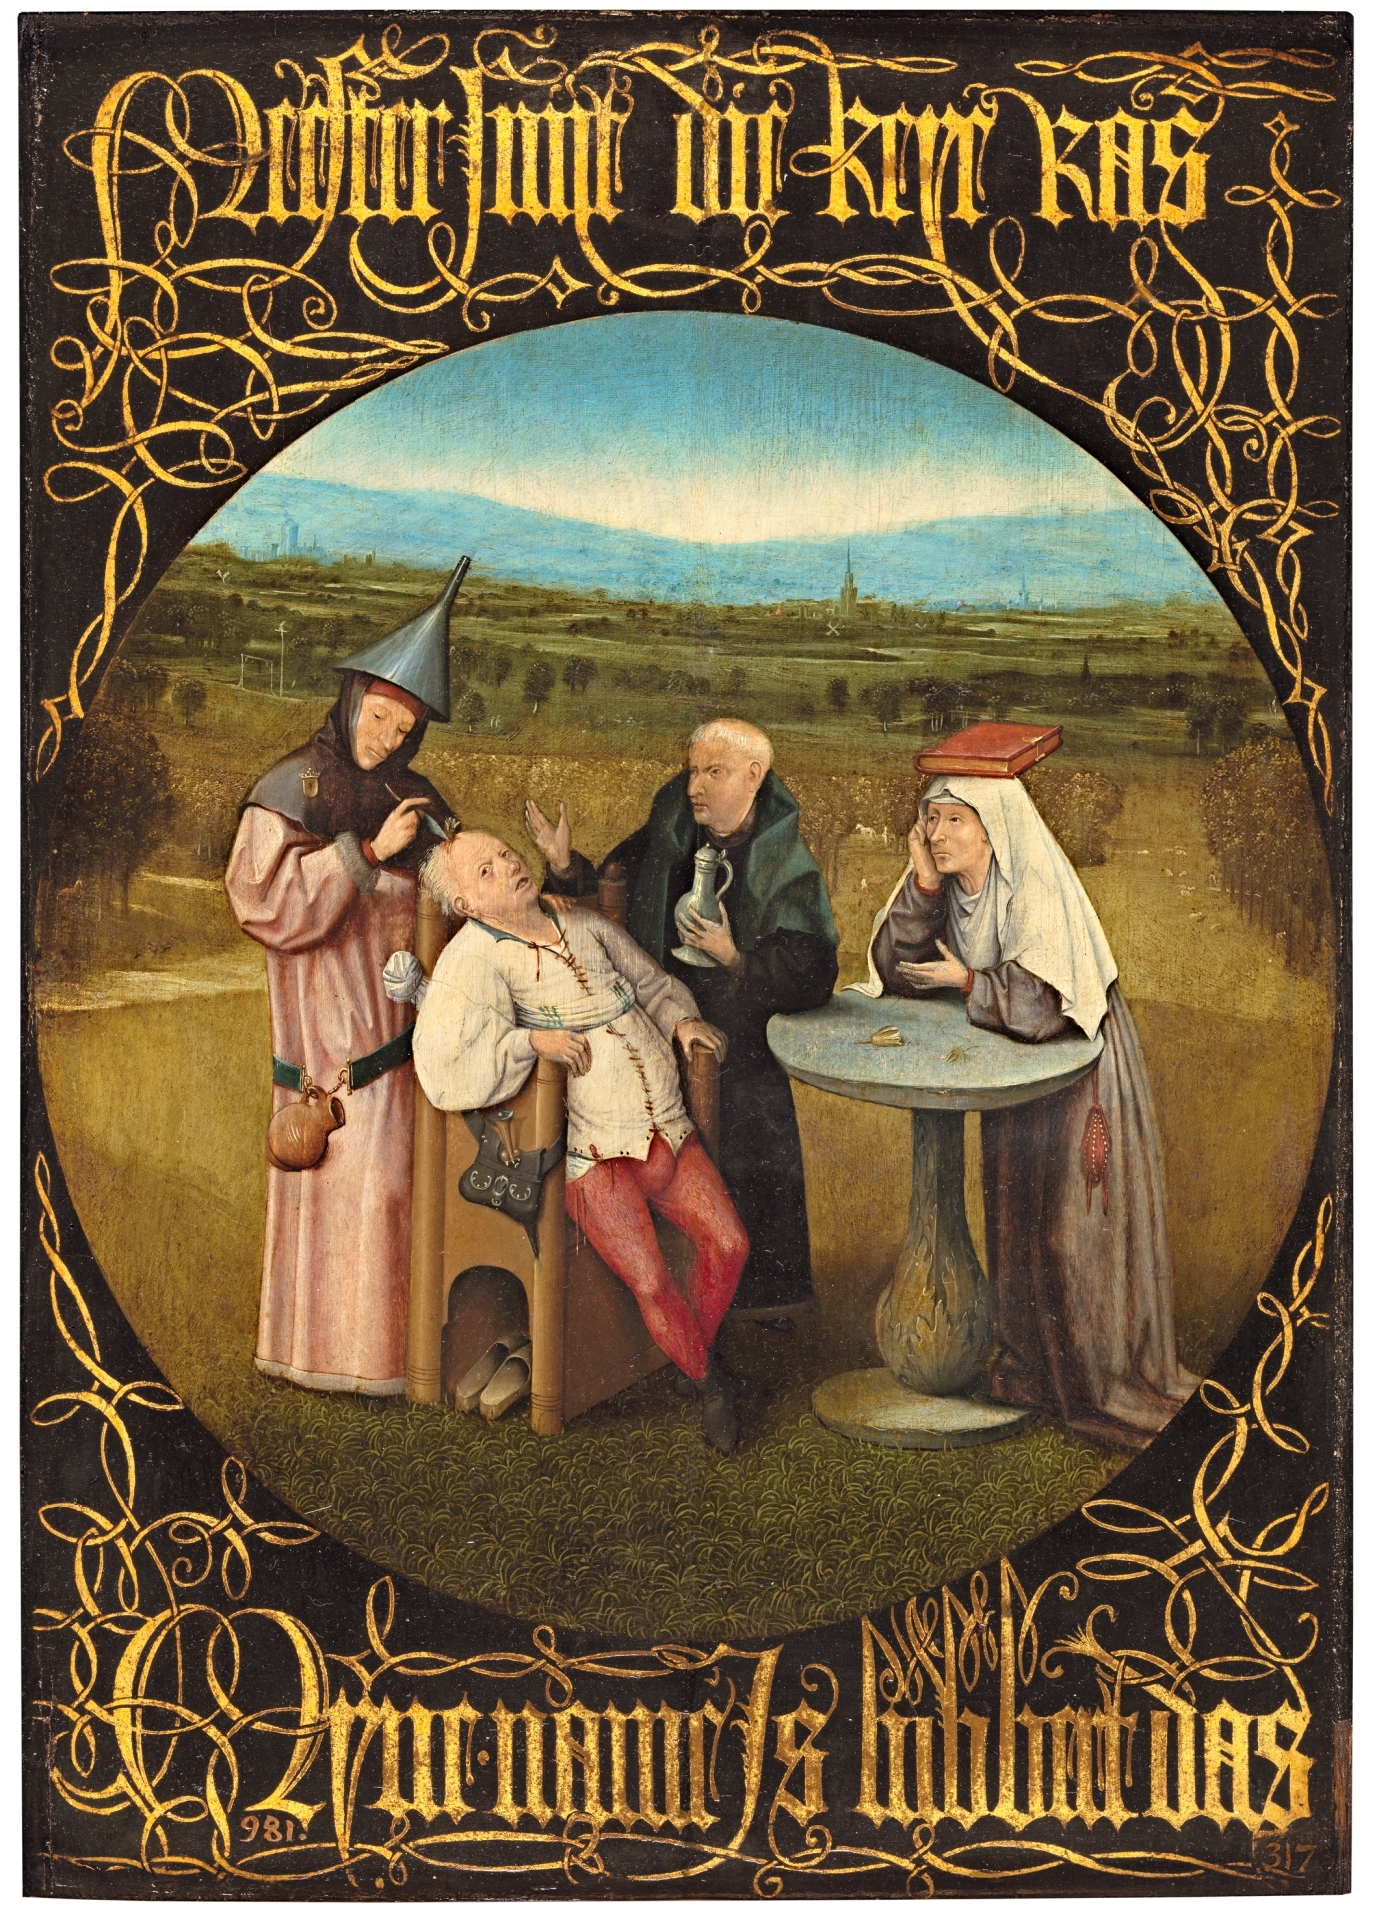 Imagen del cuadro "La extracción de la piedra de la locura" realizado por el pintor neerlandésJheronimus van Aken, conocido como el Bosco. En esta obra se representa la realización de una trepanación. 